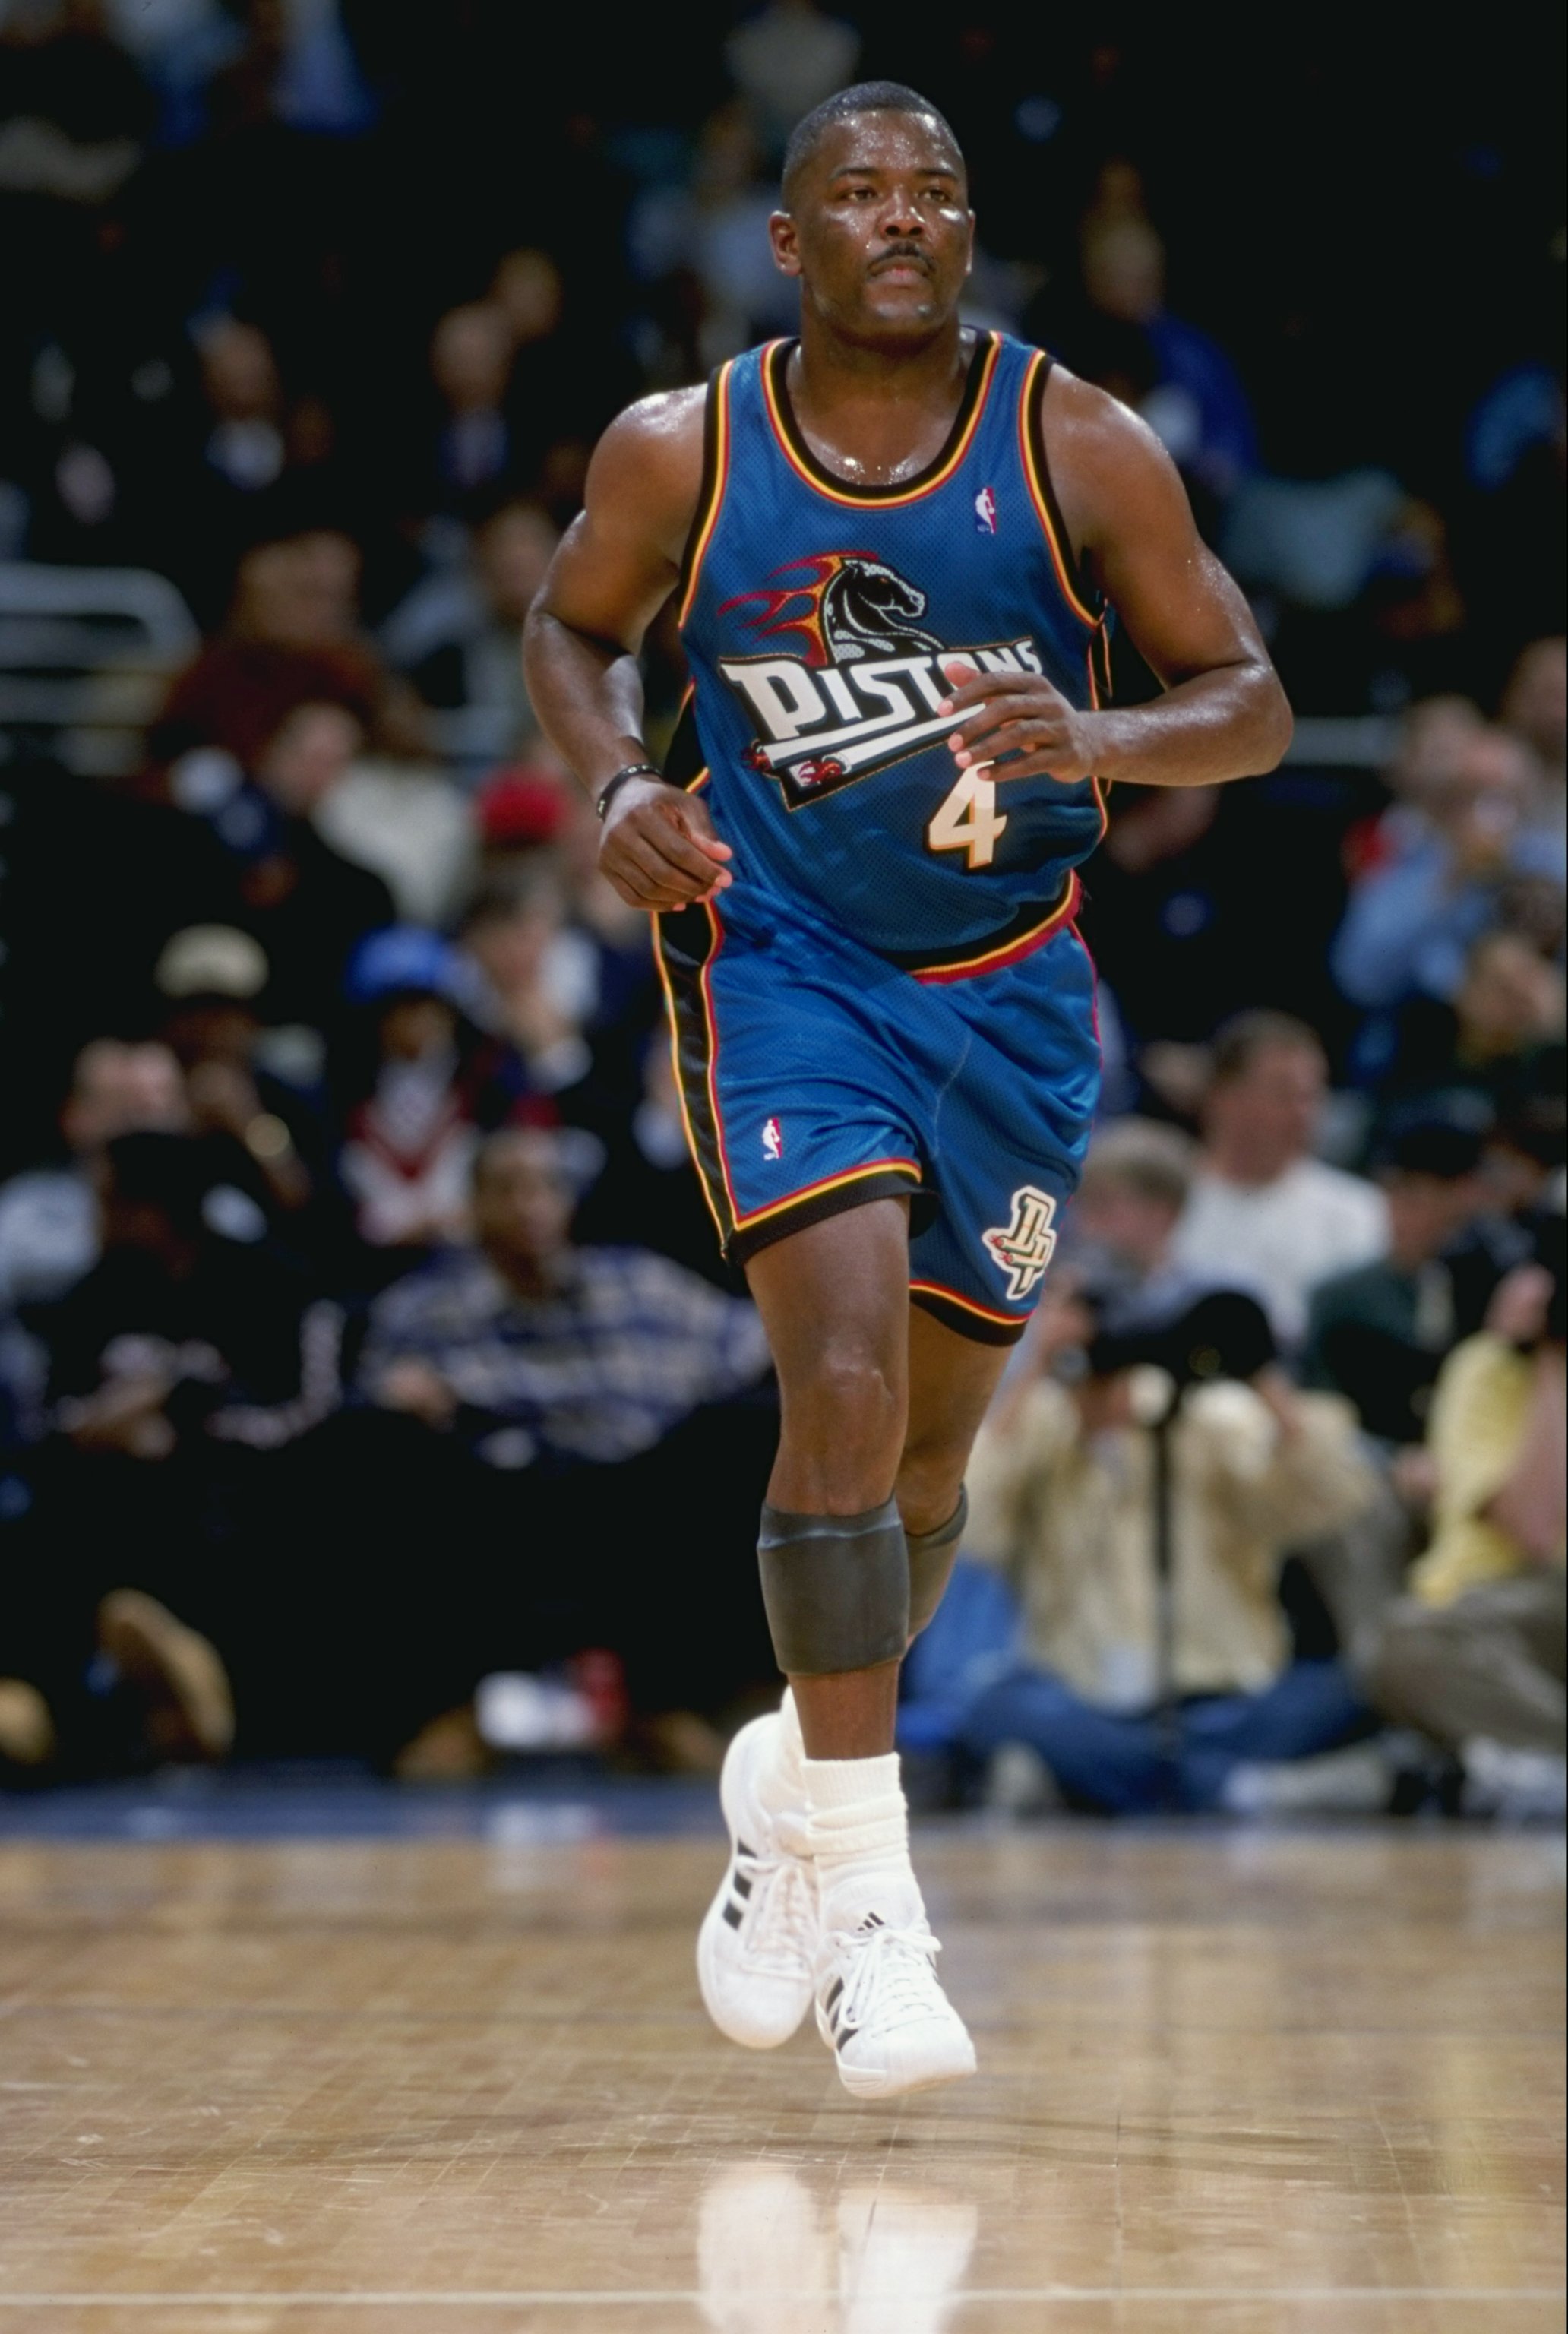 Лучший баскетболист всех времен. Джо Думарс баскетболист. Джо Думарс. Джо Дюмарс Детройт. Detroit 1990s.